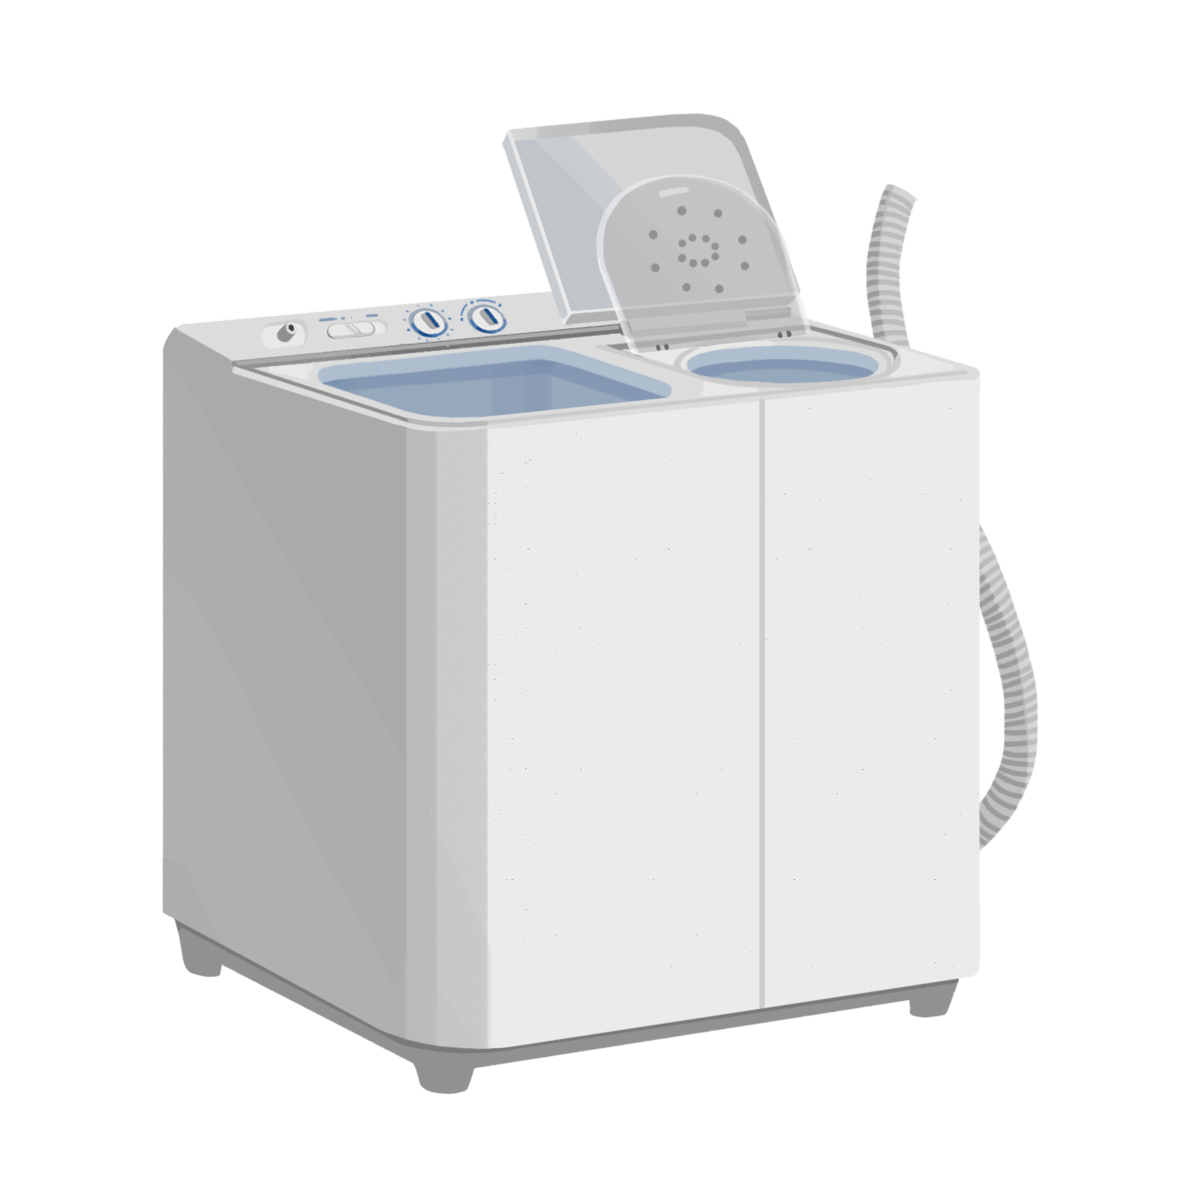 二槽式洗濯機の商用フリーな無料イラスト 新品・きれい